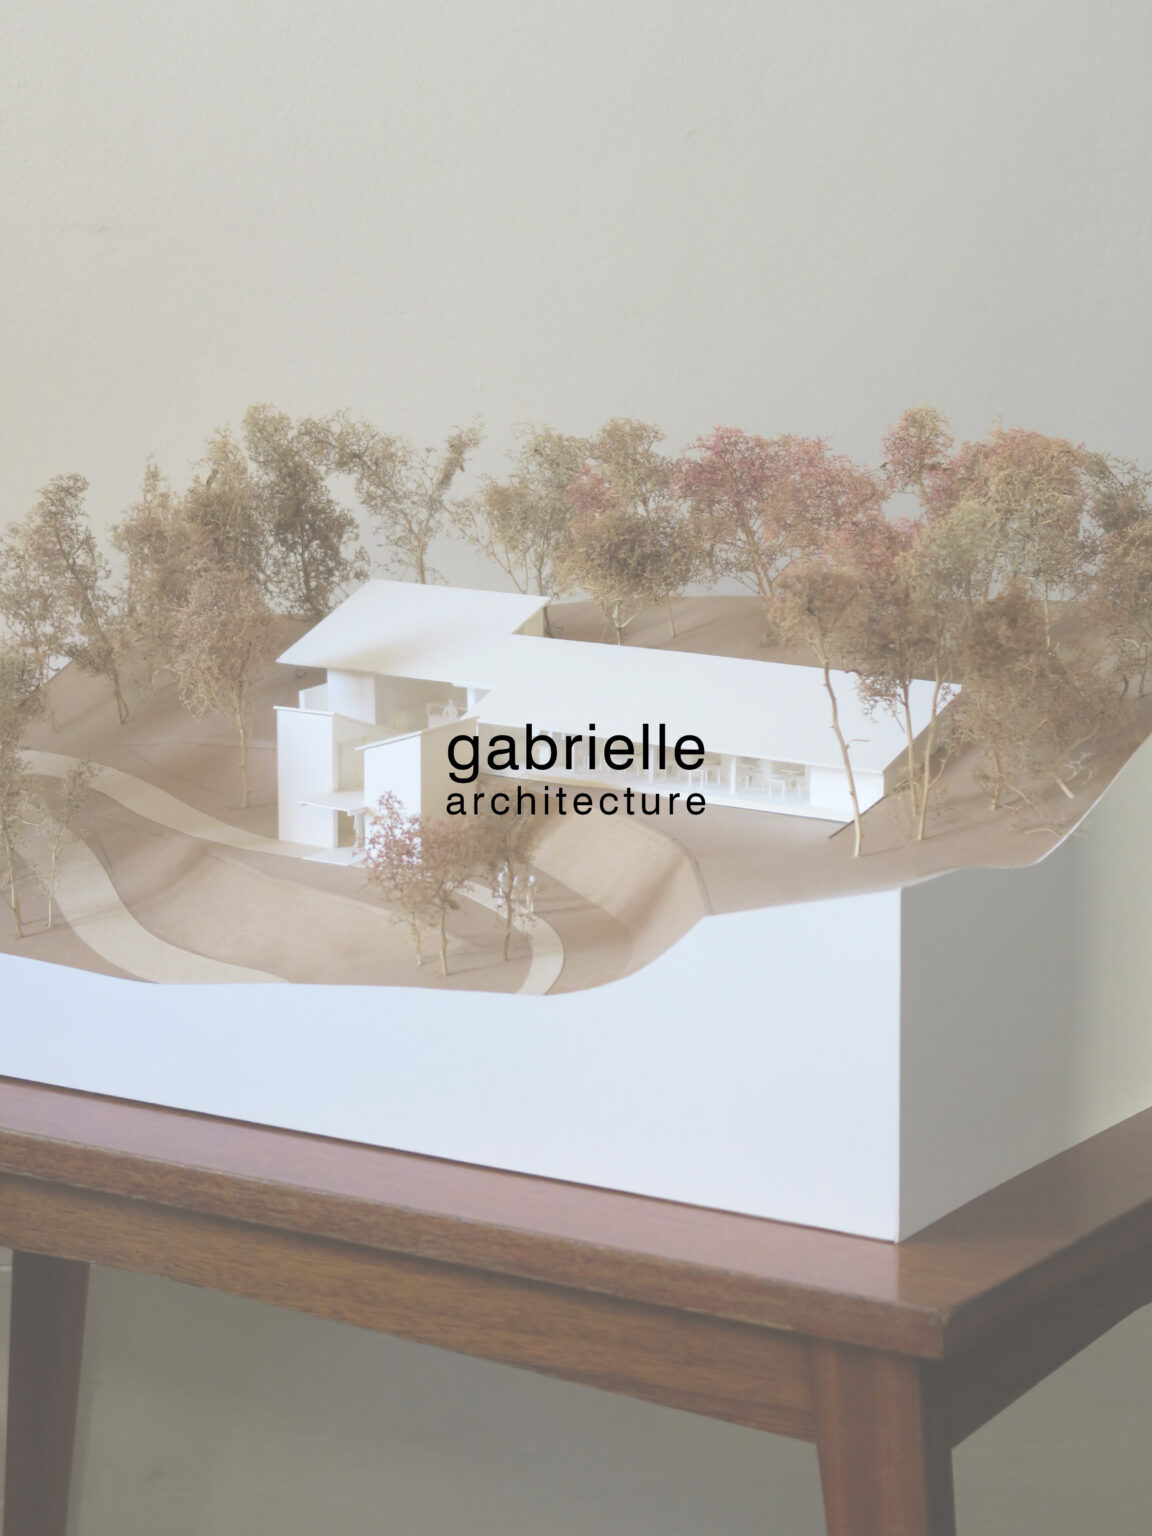 gabrielle-architecture-renovation-patrimoine-decoration-paris-bordeaux-cap-ferret